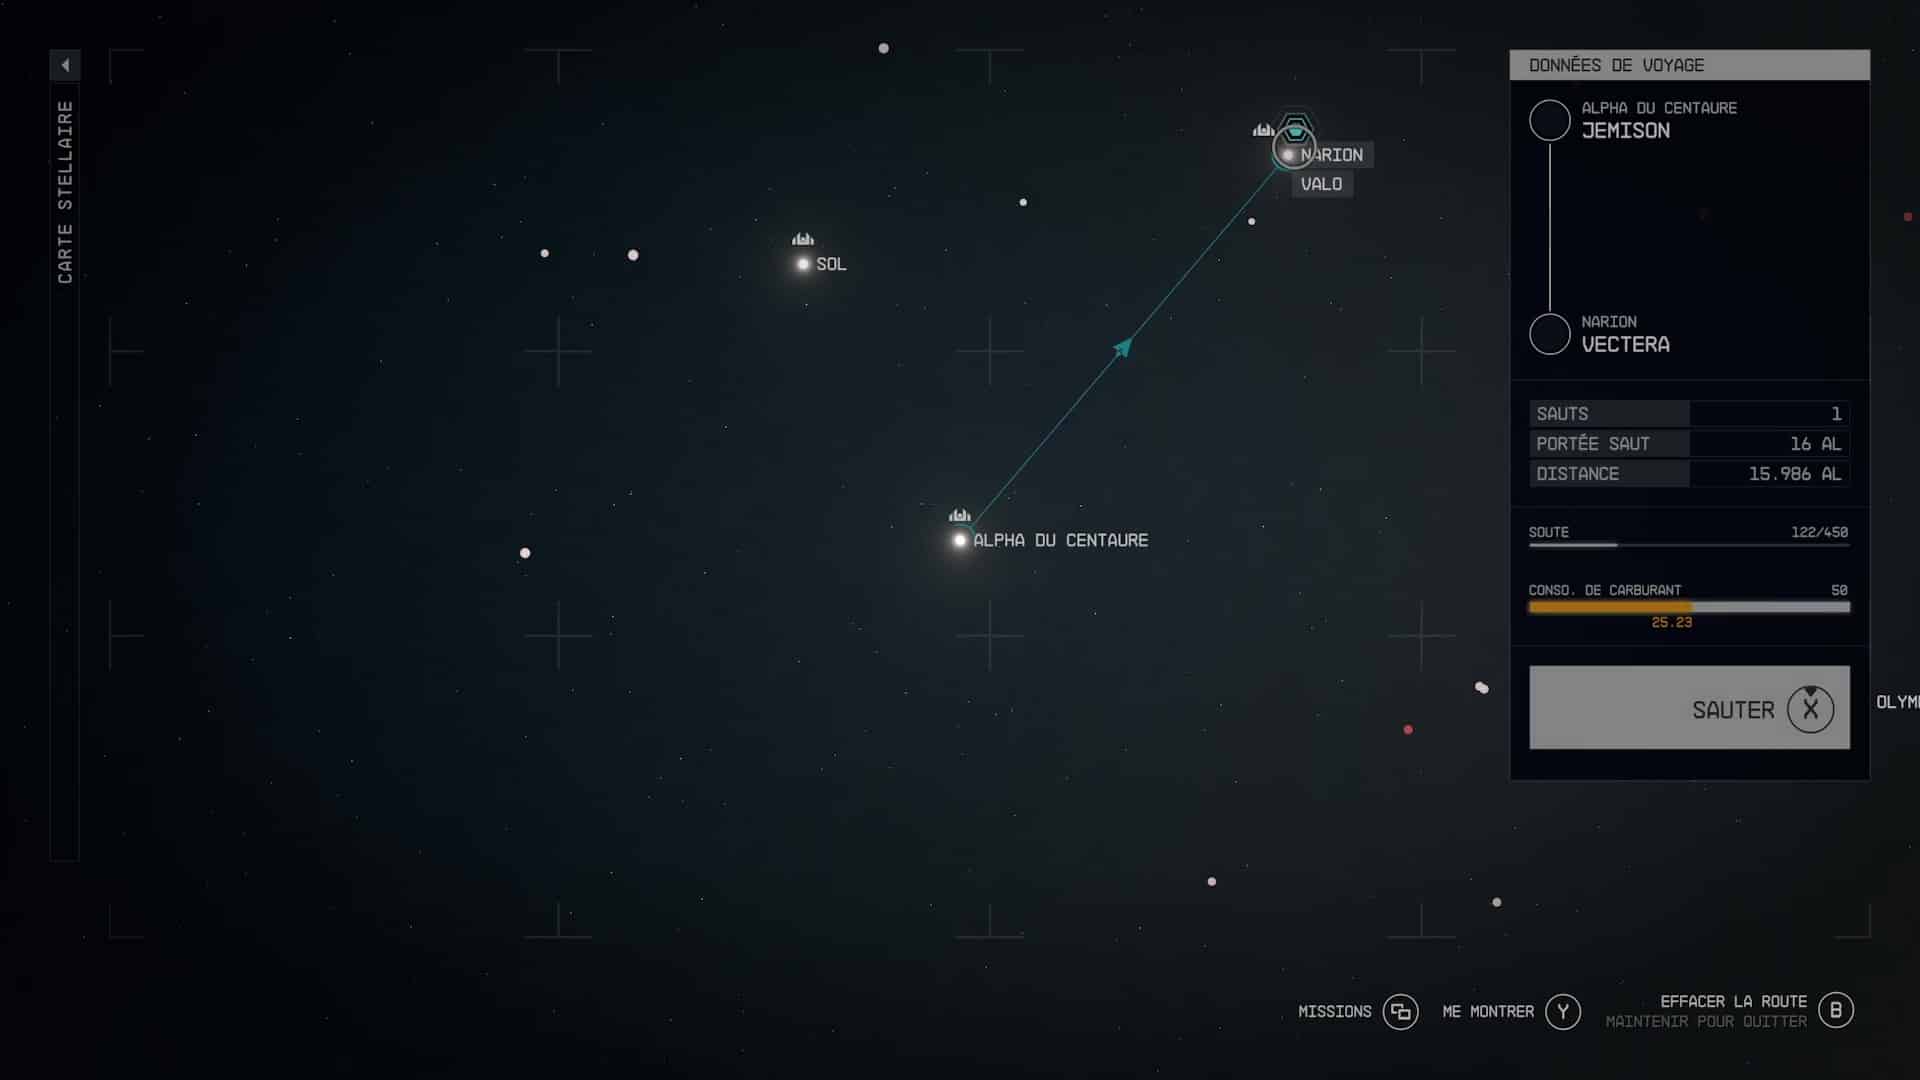 Guide starfield mission retour vectera 31 1